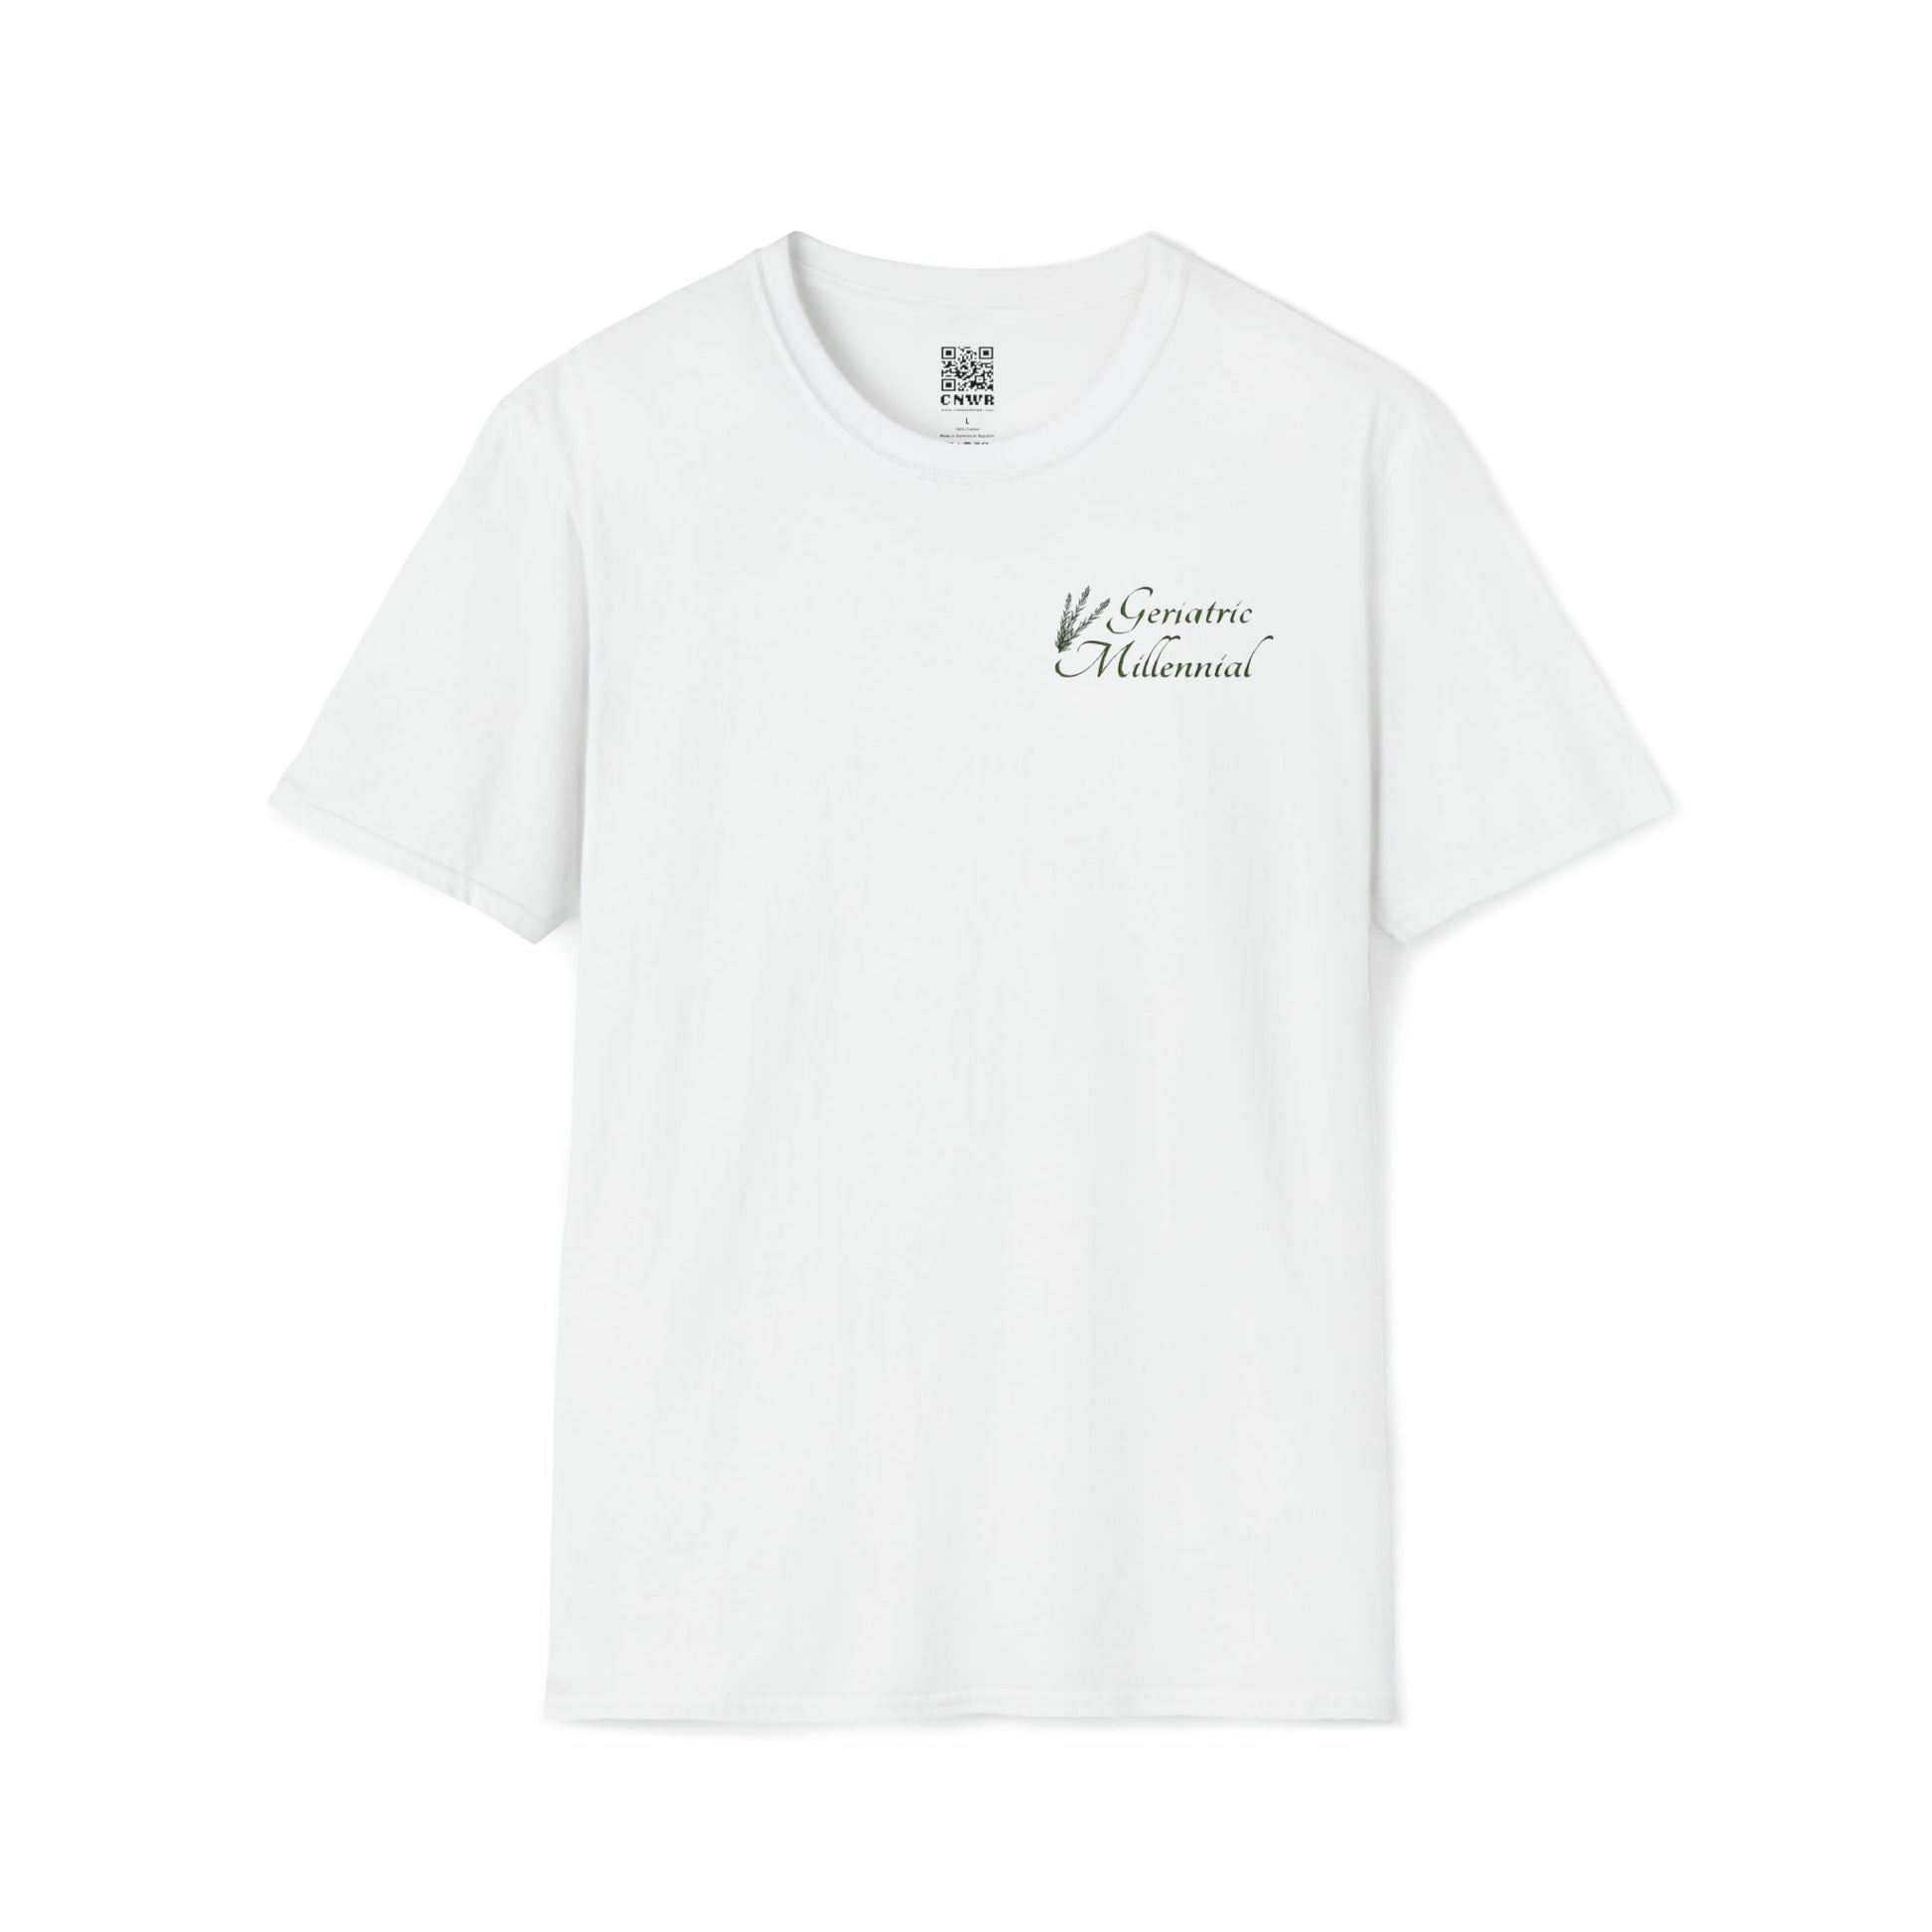 Geriatric Millennial T-Shirt | CANAANWEAR | T-Shirt | Crew neck